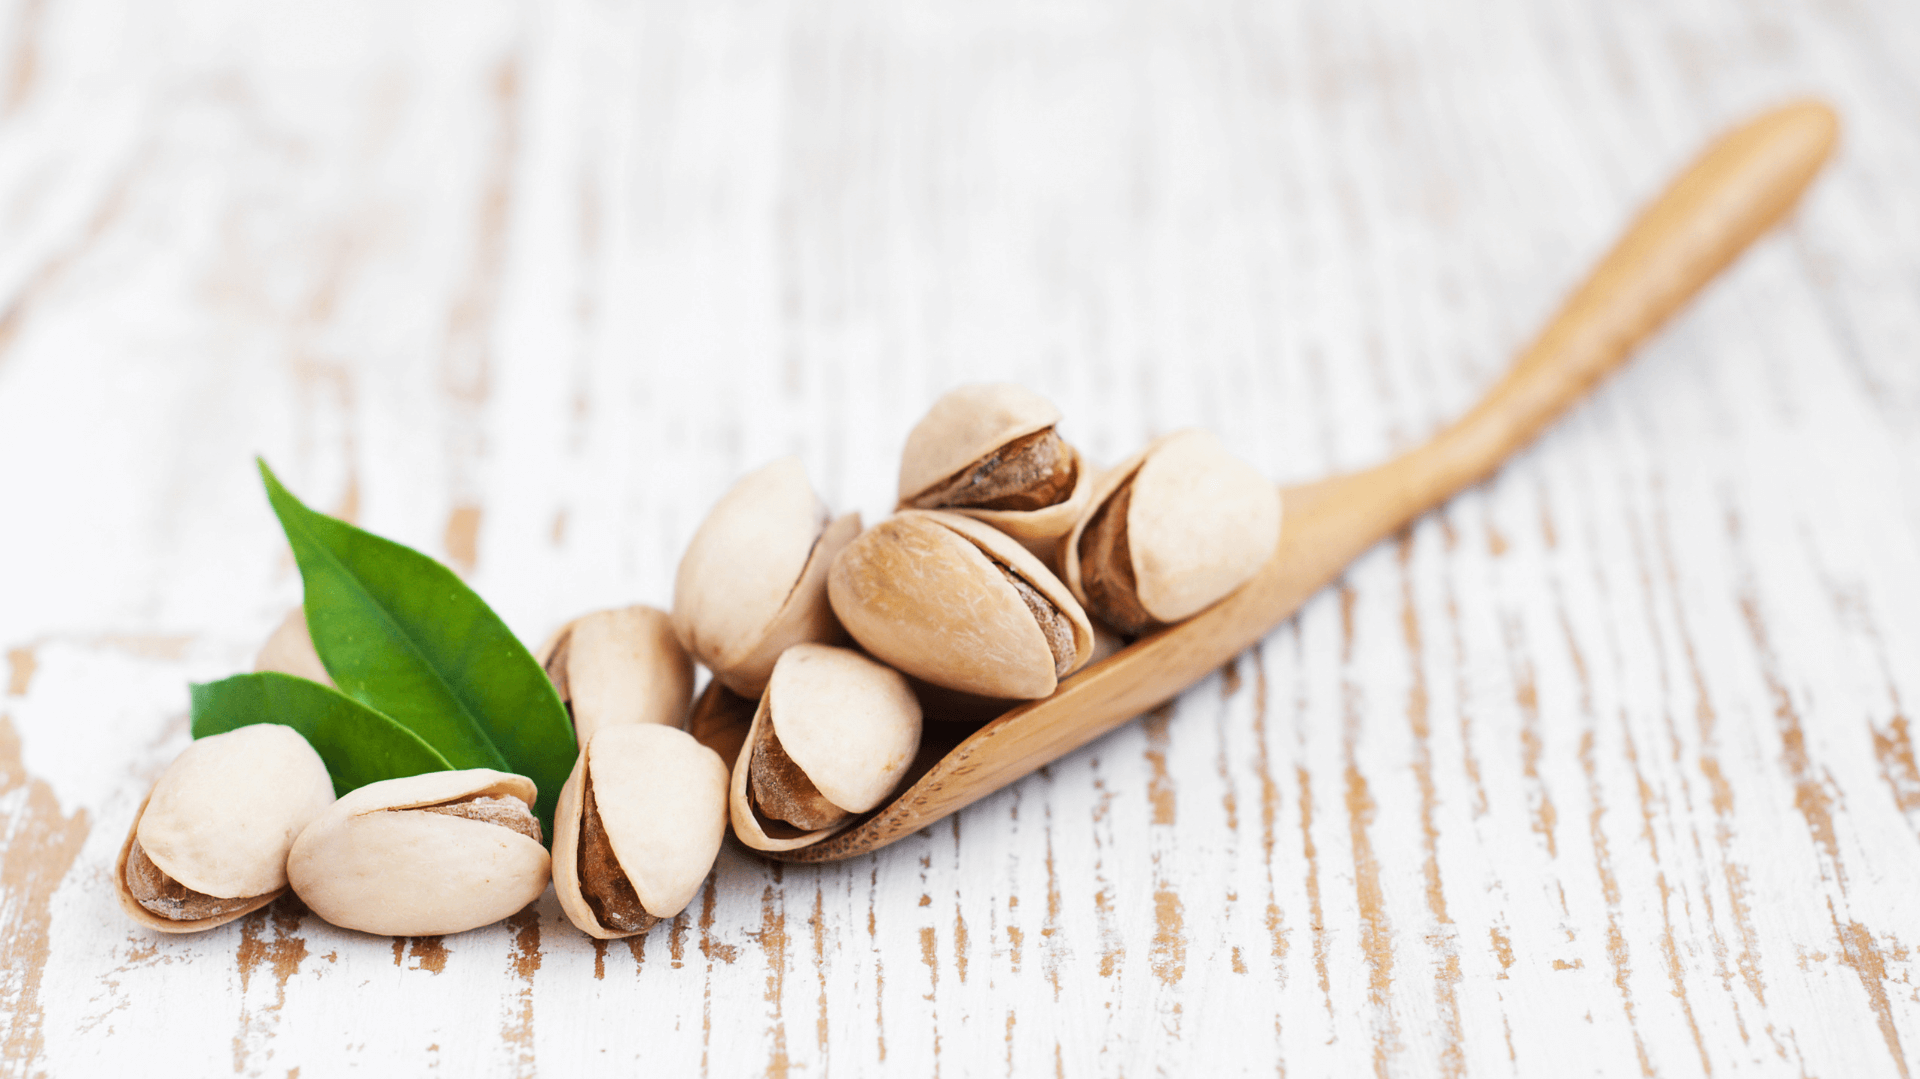 Les bienfaits santé de la pistache : Femme Actuelle Le MAG